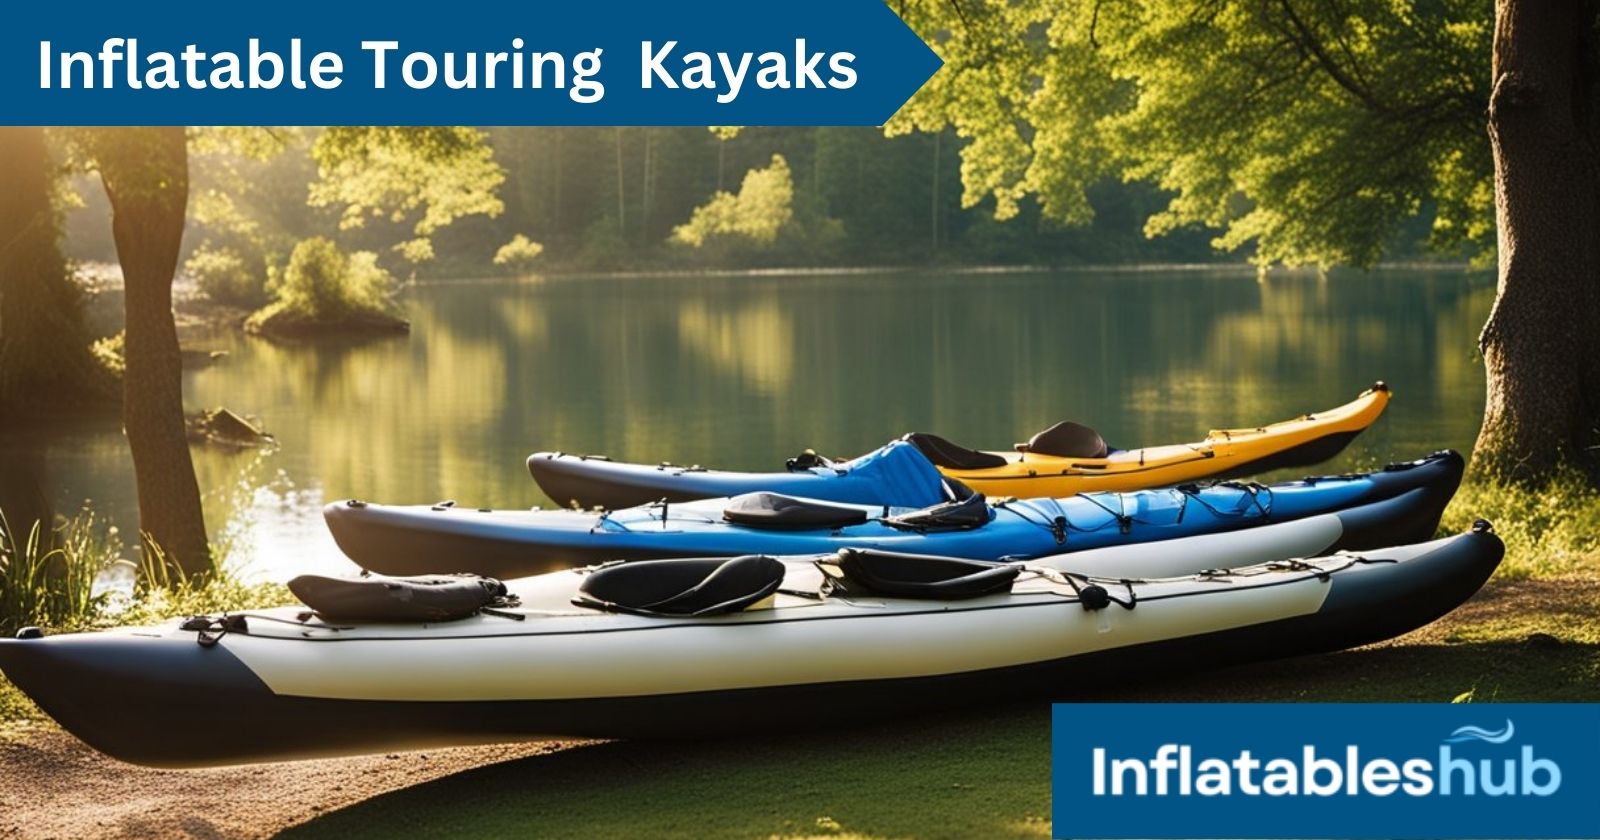 Inflatable Touring Kayaks